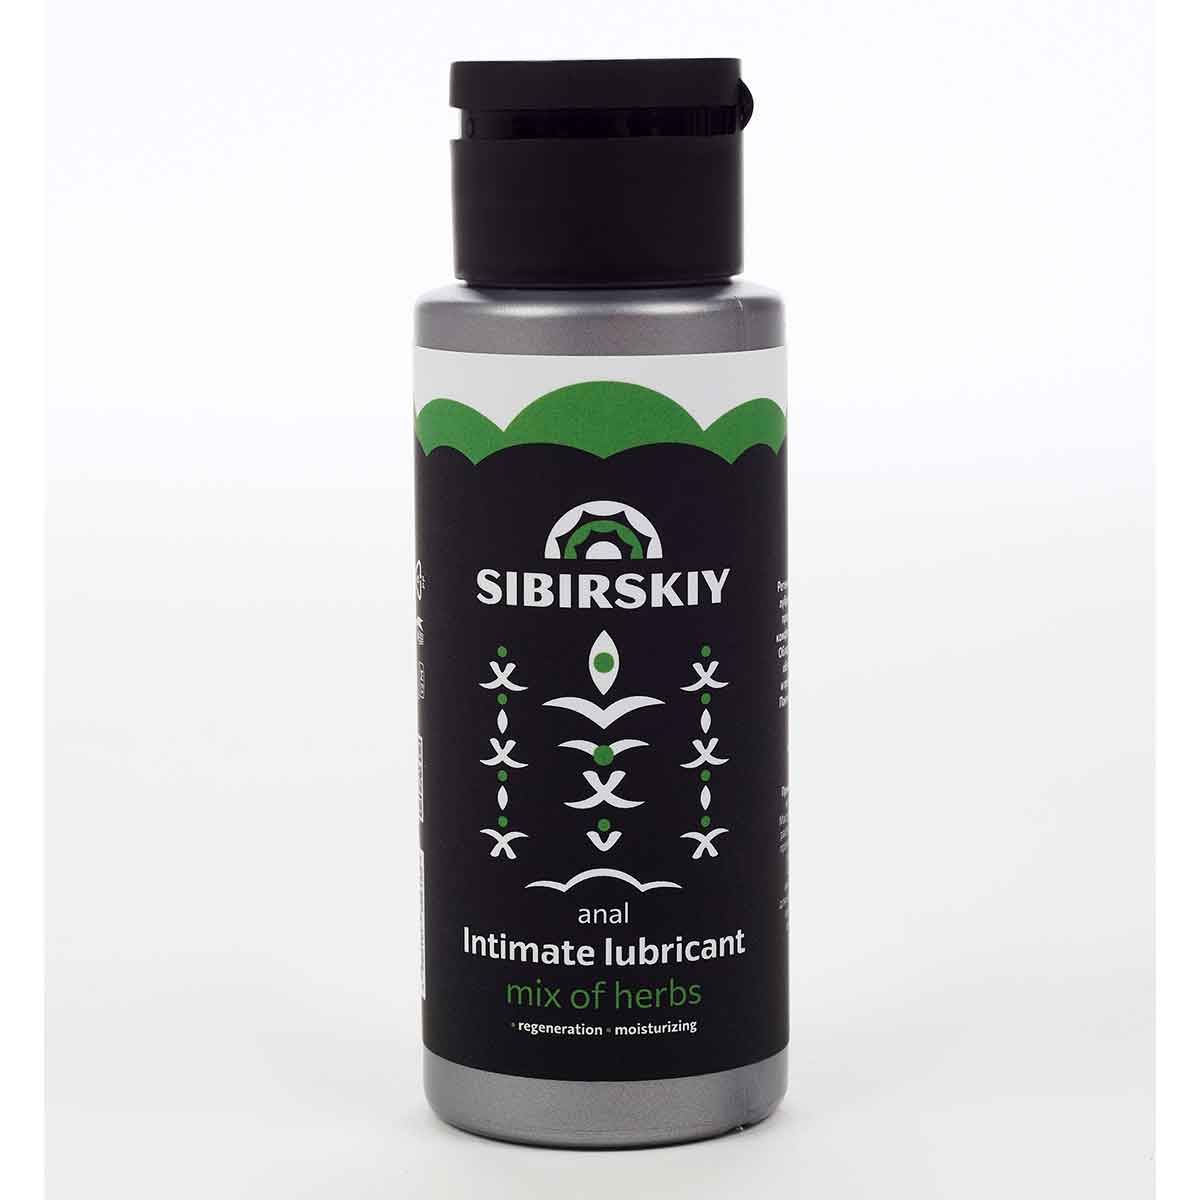 SIBIRSKIY - Регенерирующий интимный анальный лубрикант с ароматом луговых трав, 100 мл